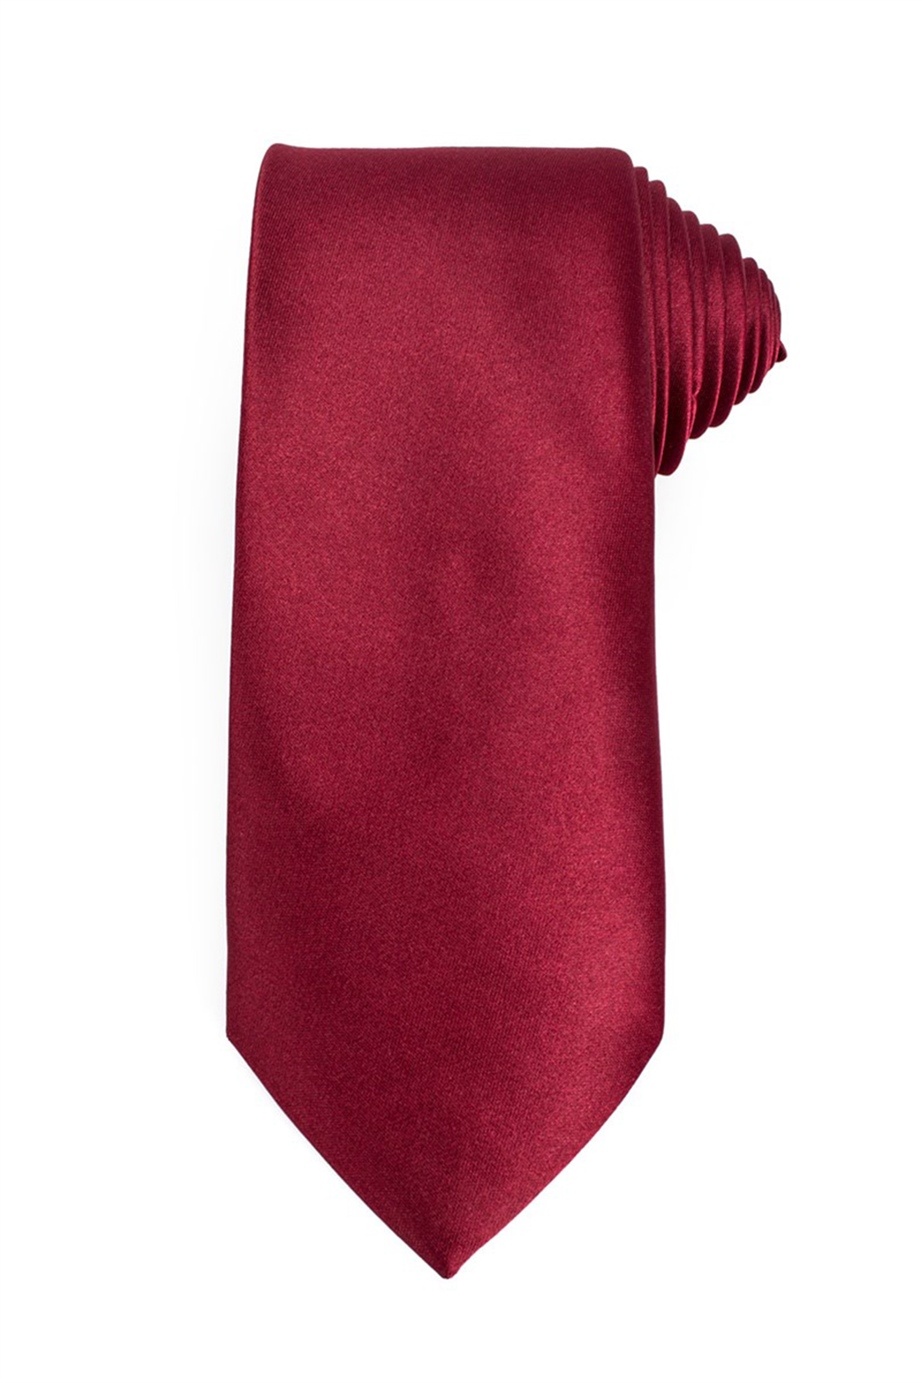 Bordó színű klasszikus nyakkendő